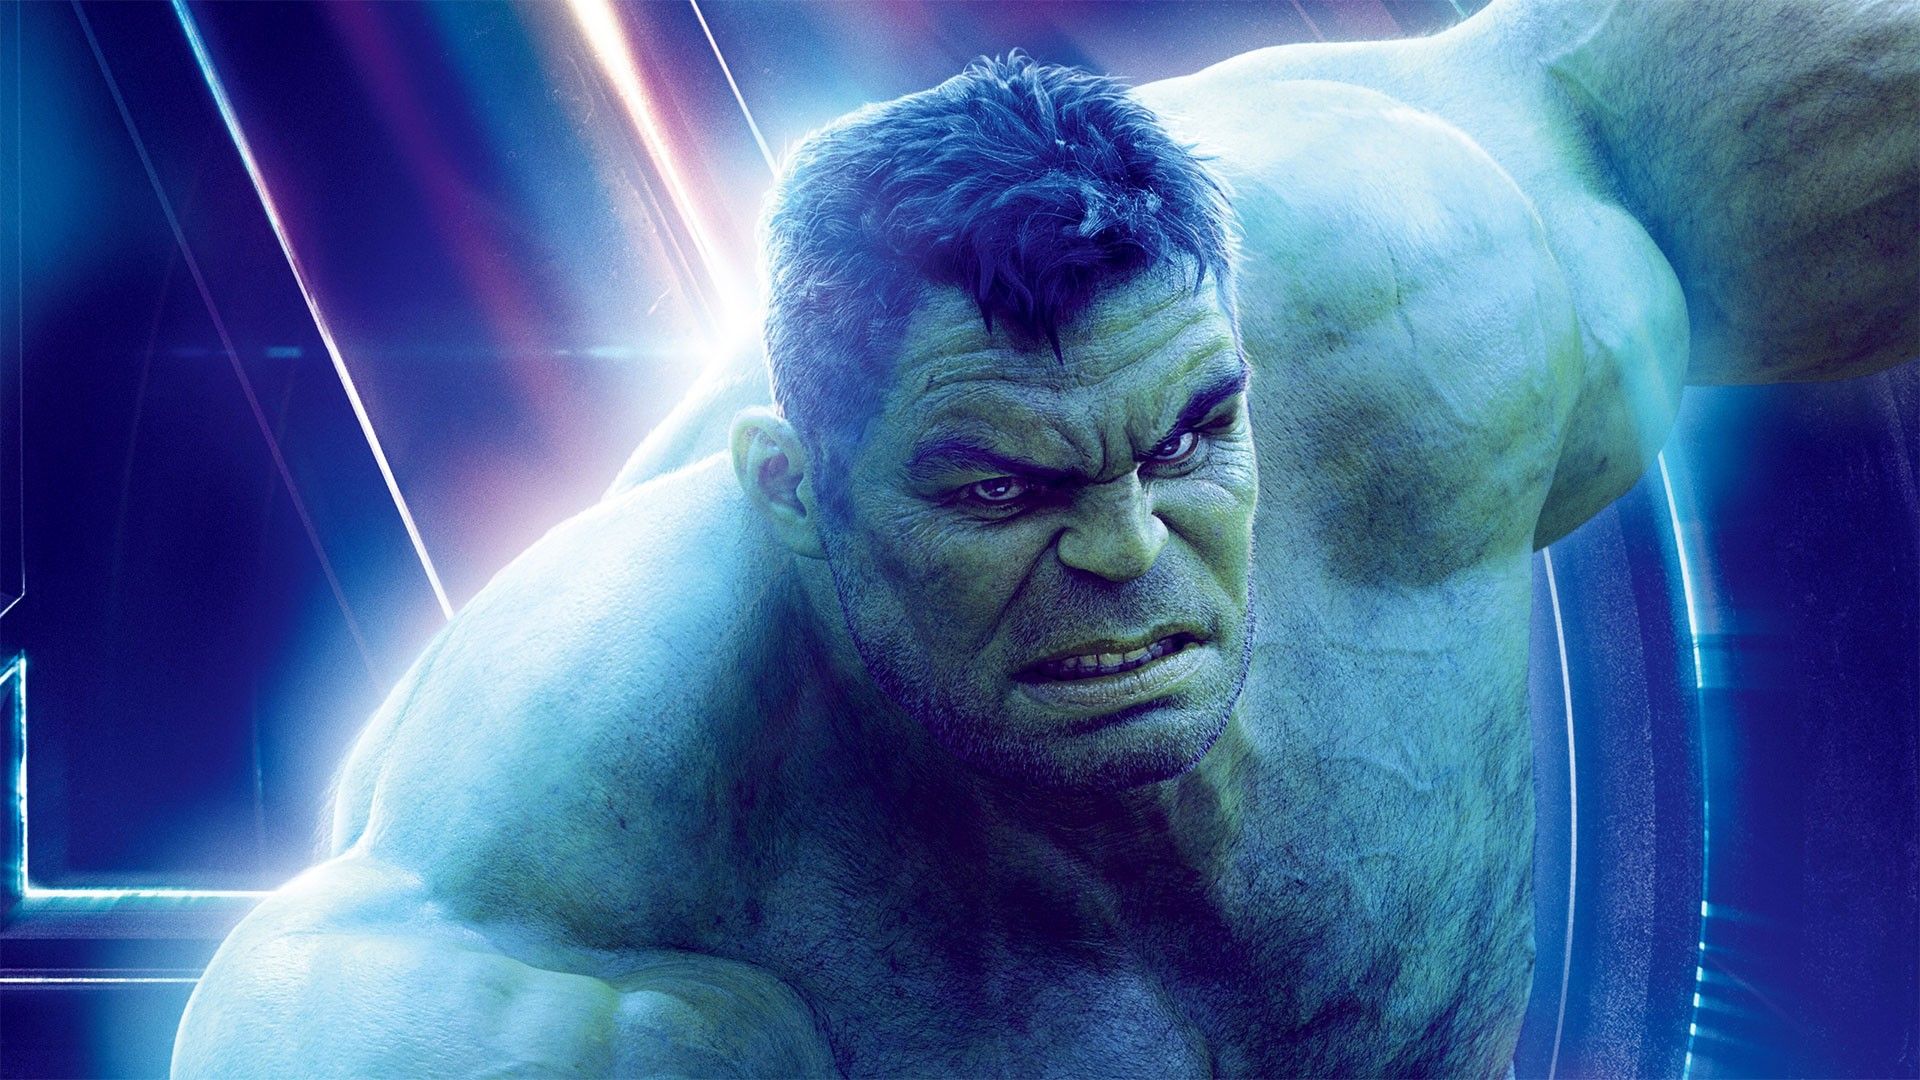 Hulk Avengers Endgame Art Wallpapers